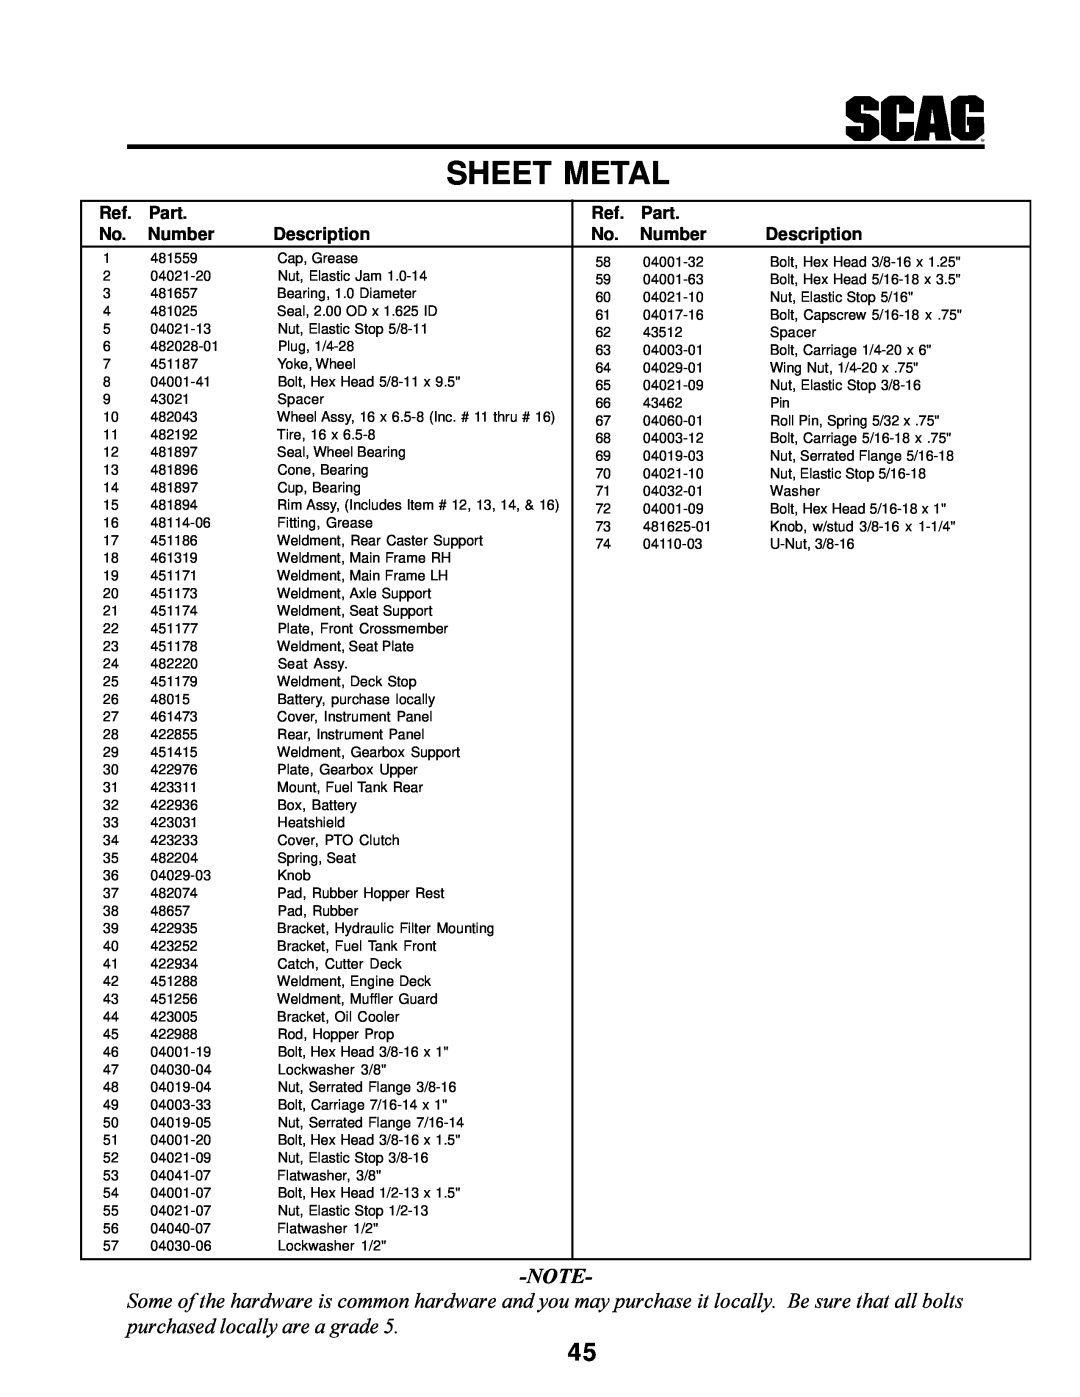 MB QUART SCR manual Sheet Metal, Part, Number, Description 